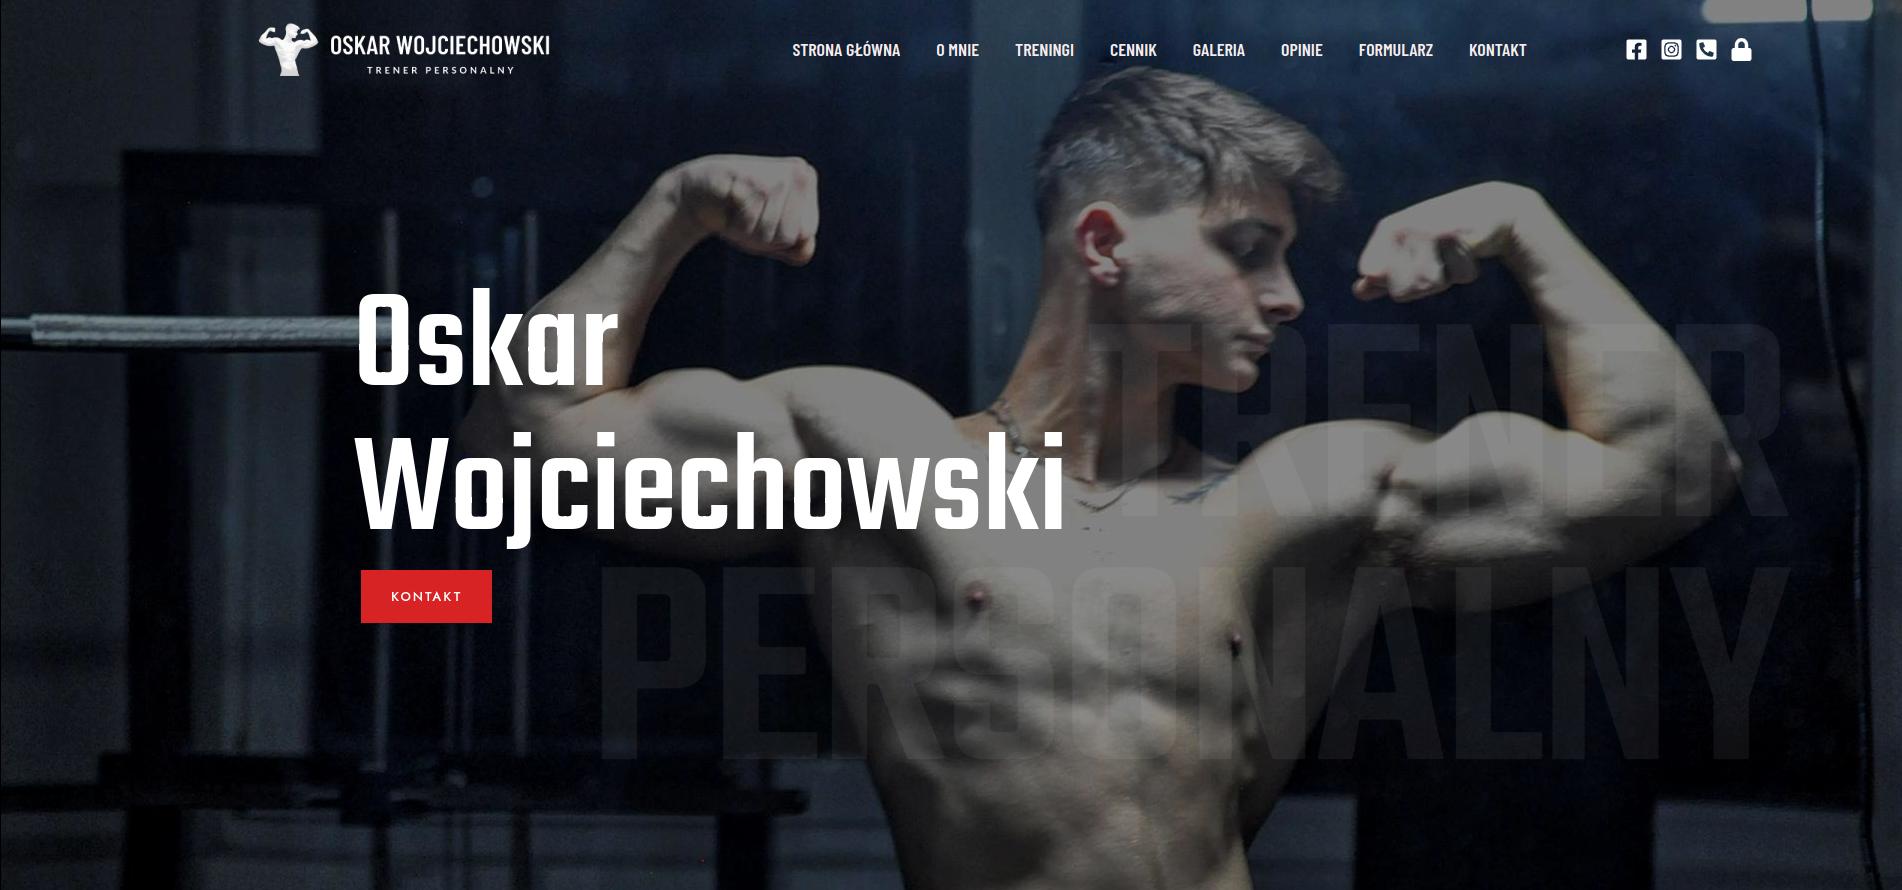 www.oskarwojciechowski.com.pl